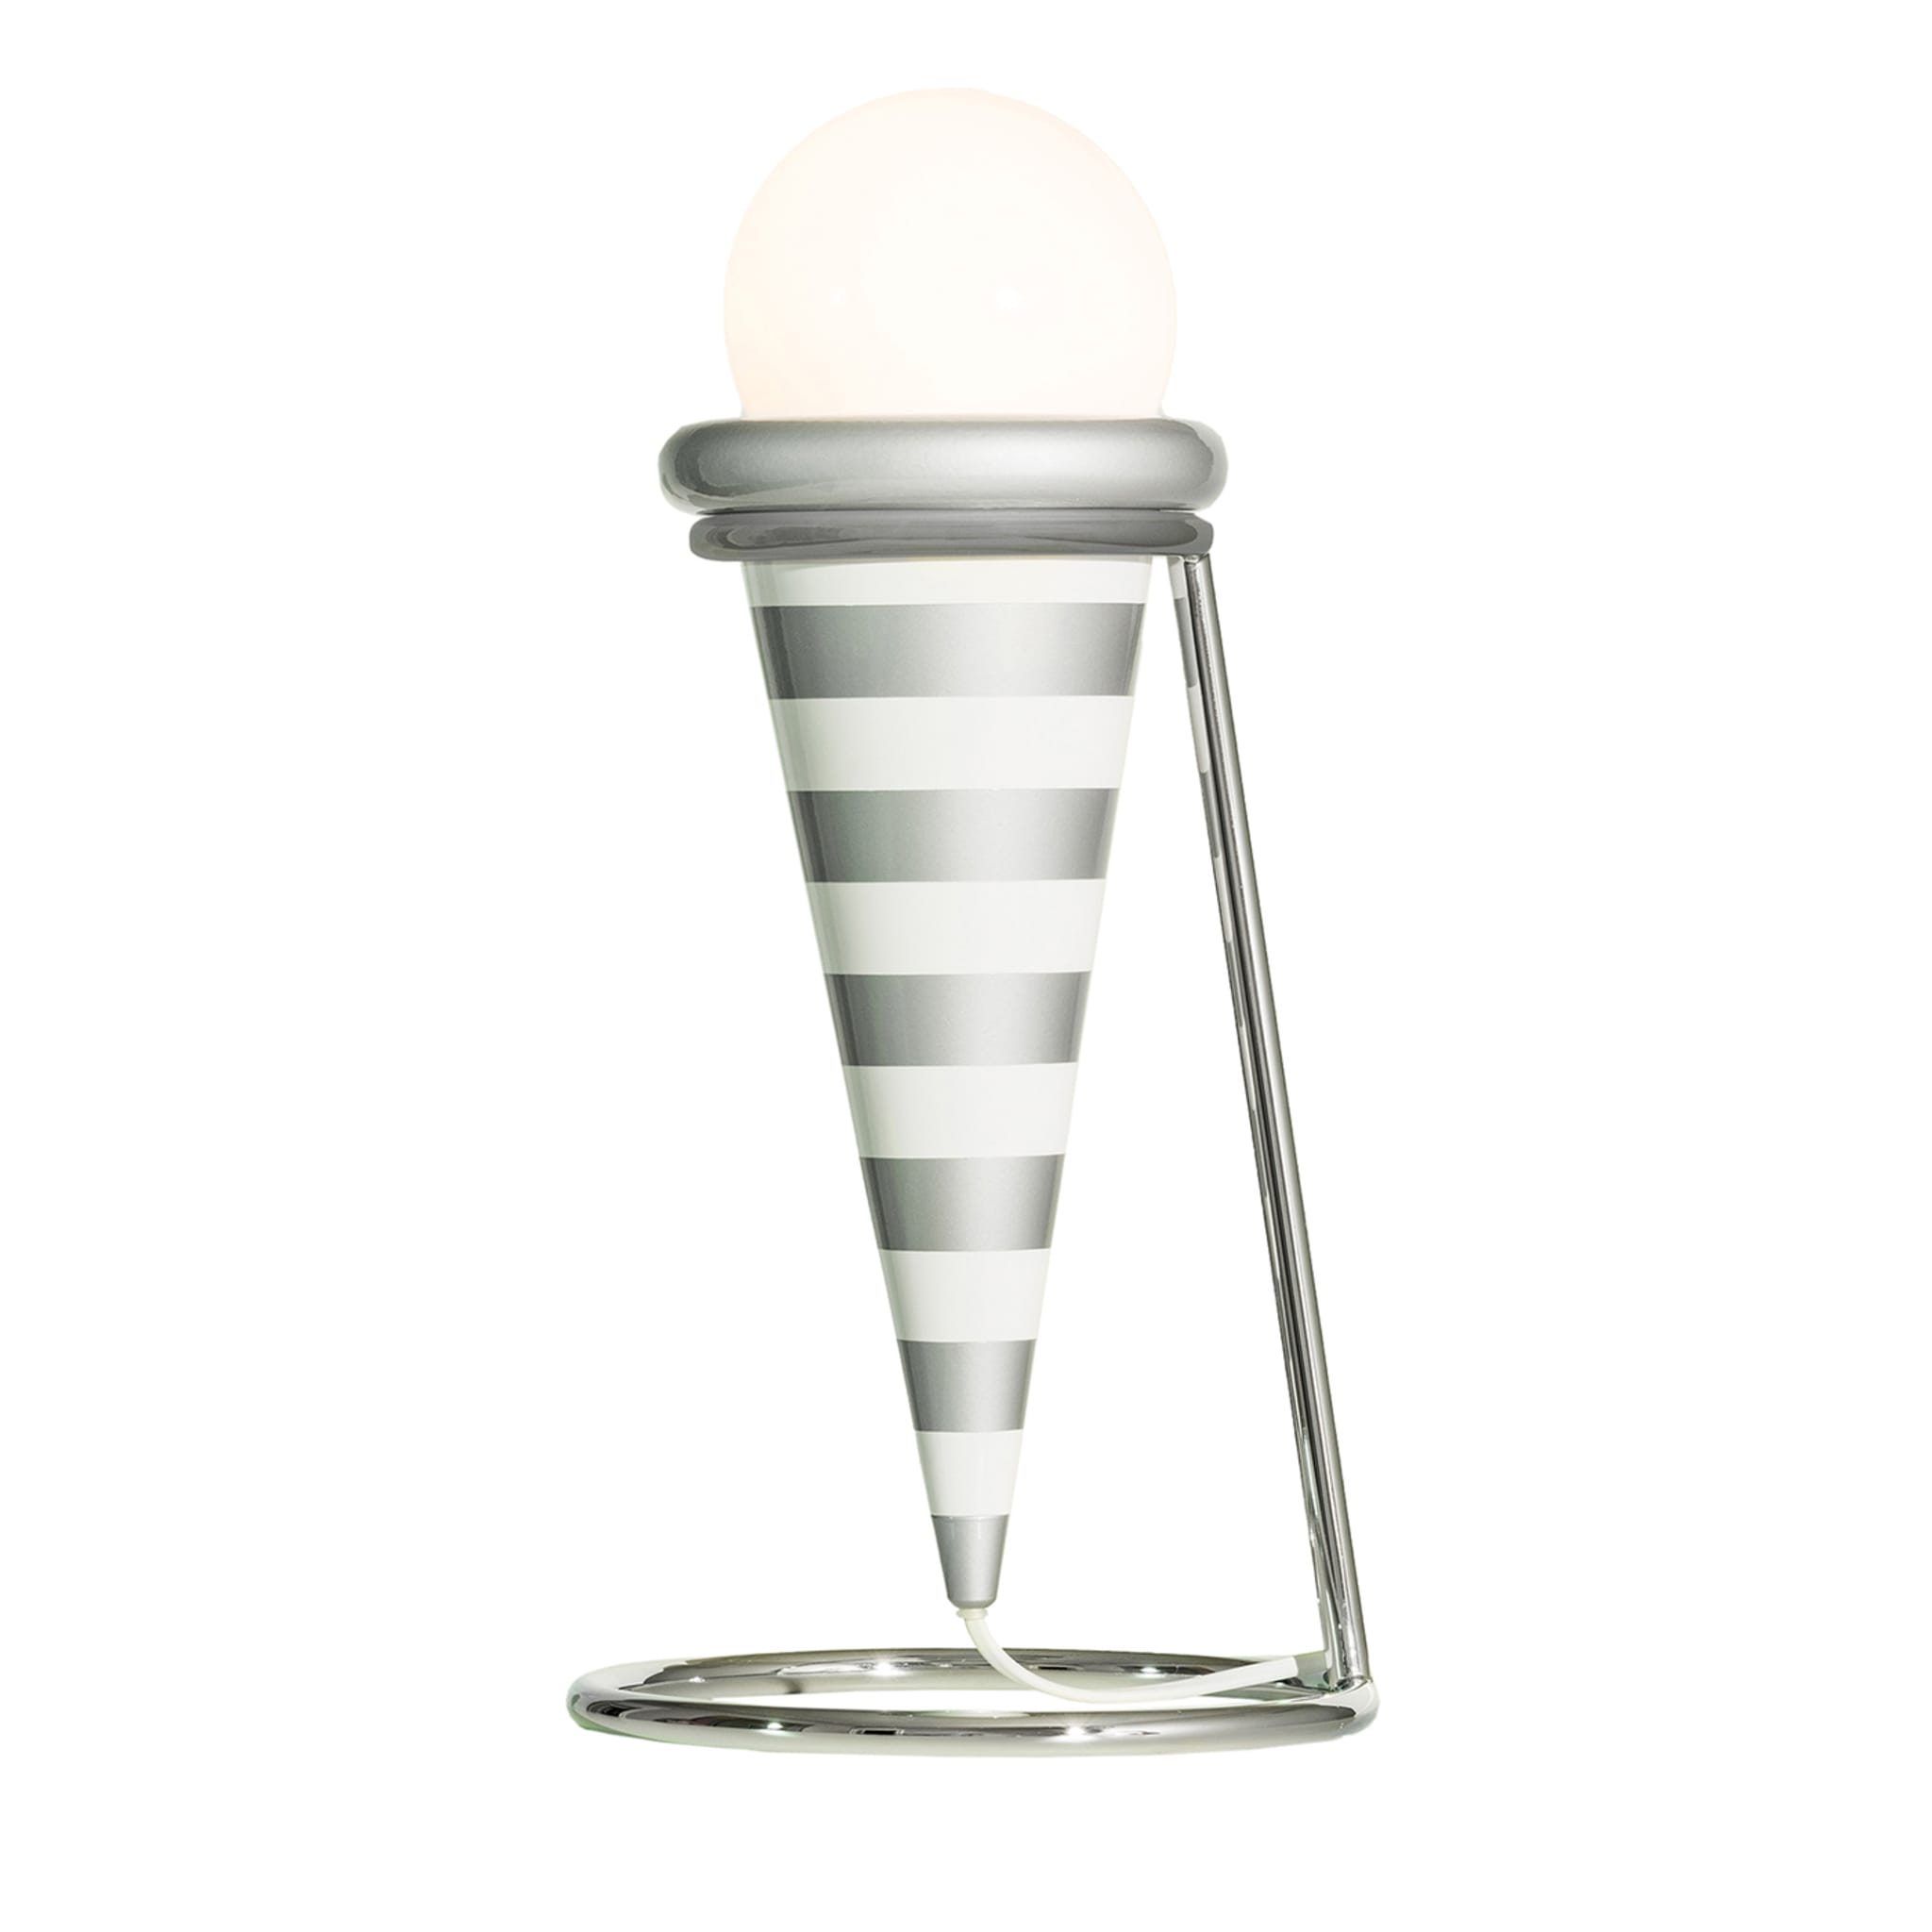 Gelato gestreifte tischlampe von MASANORI UMEDA - Post Design - Hauptansicht